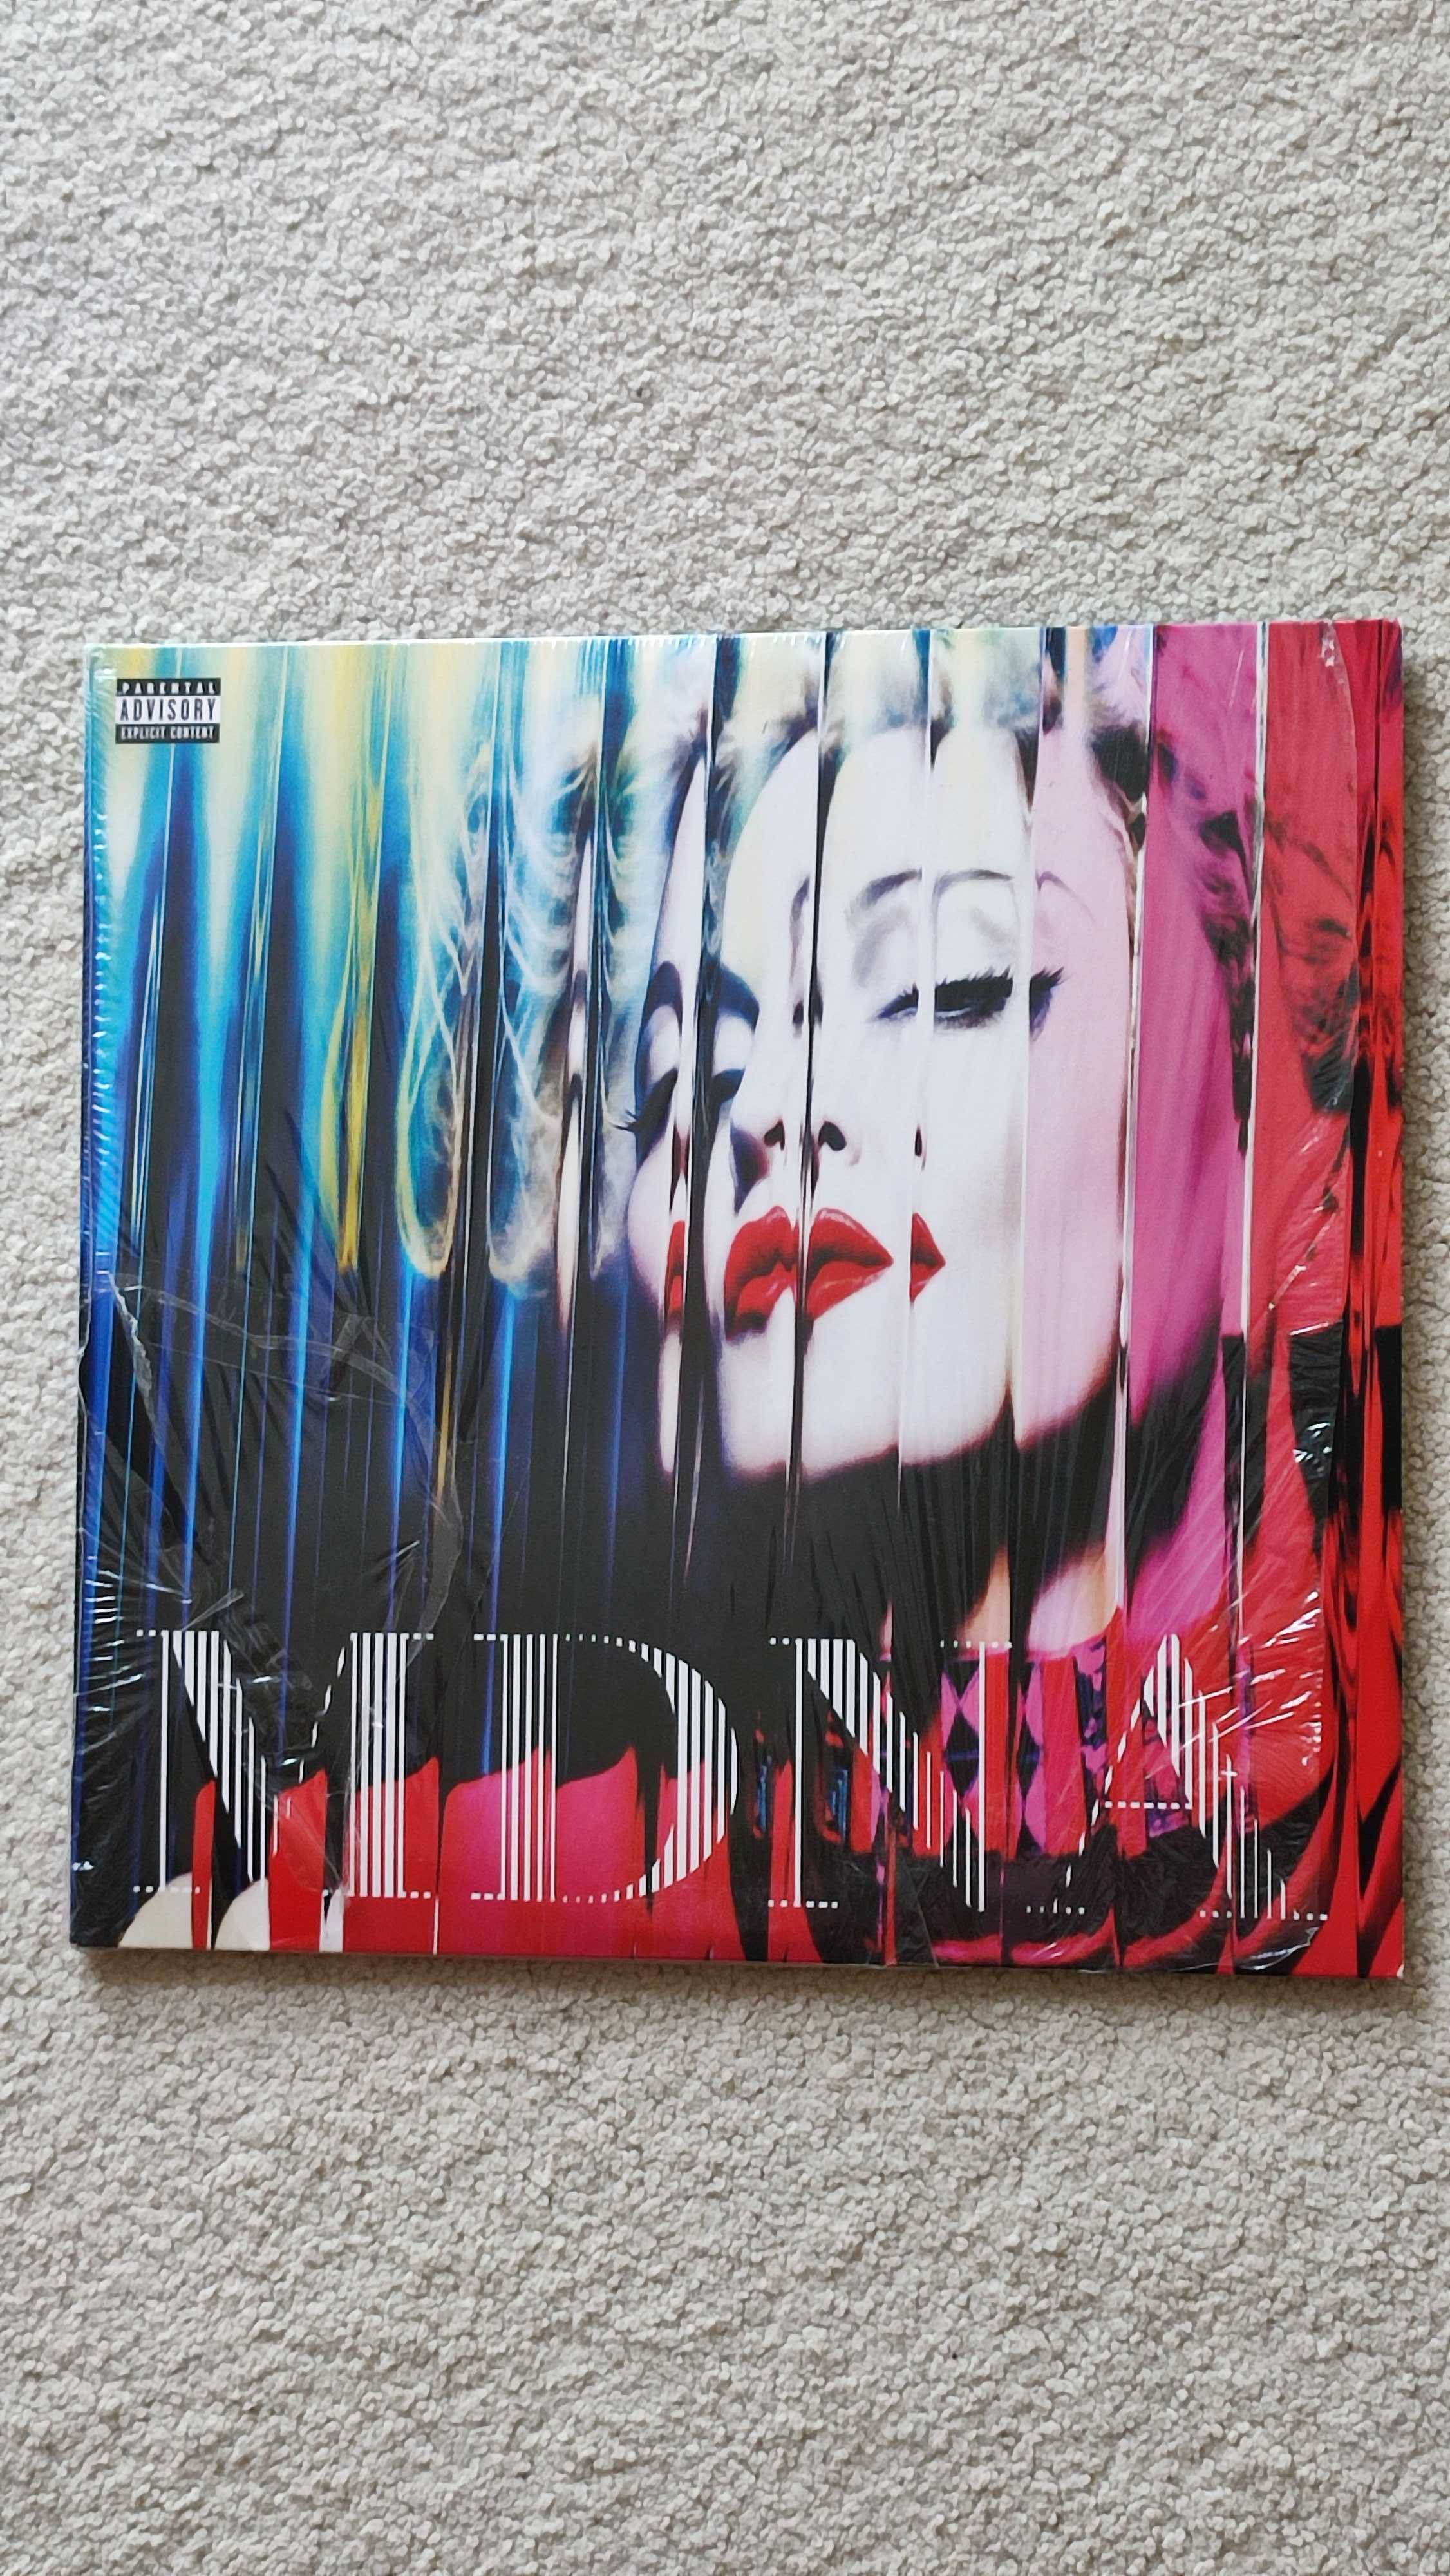 Madonna MDNA 2 x LP winyl